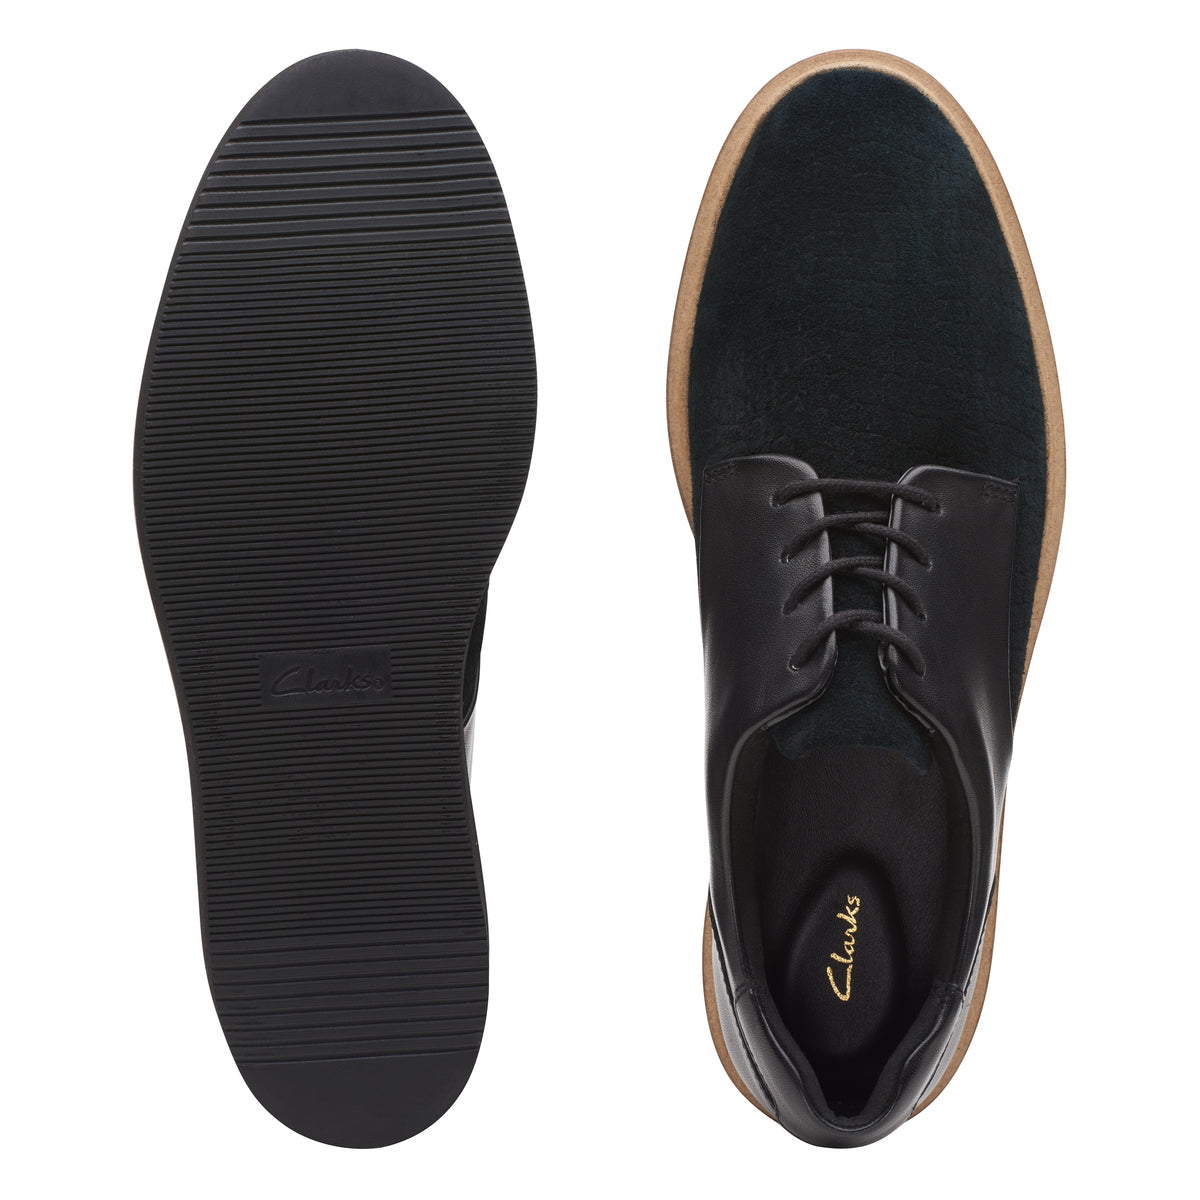 Zapatos Oxford De La Marca Clarks Para Mujer Modelo Baille Lace Black Combi En Color Negro